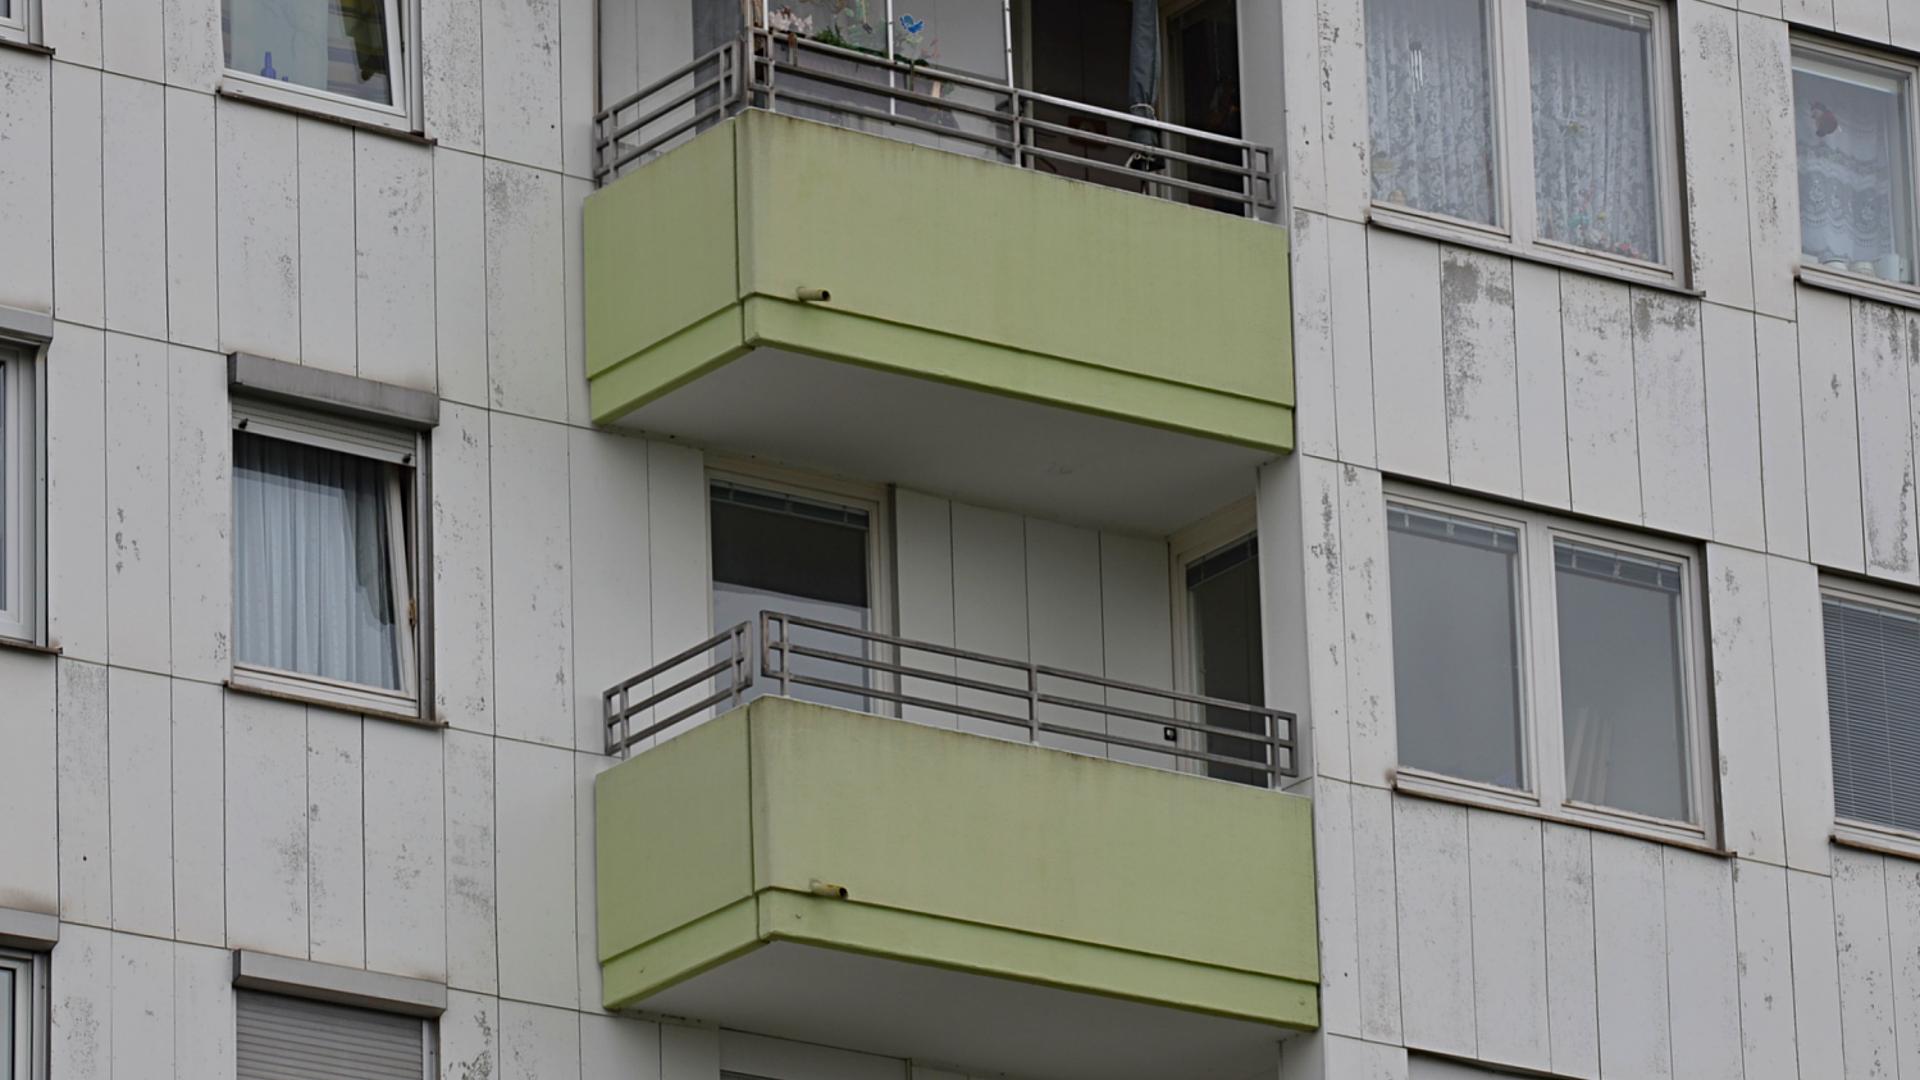 Bild: Bestand vor der Sanierung - Balkone Hochhaus 1